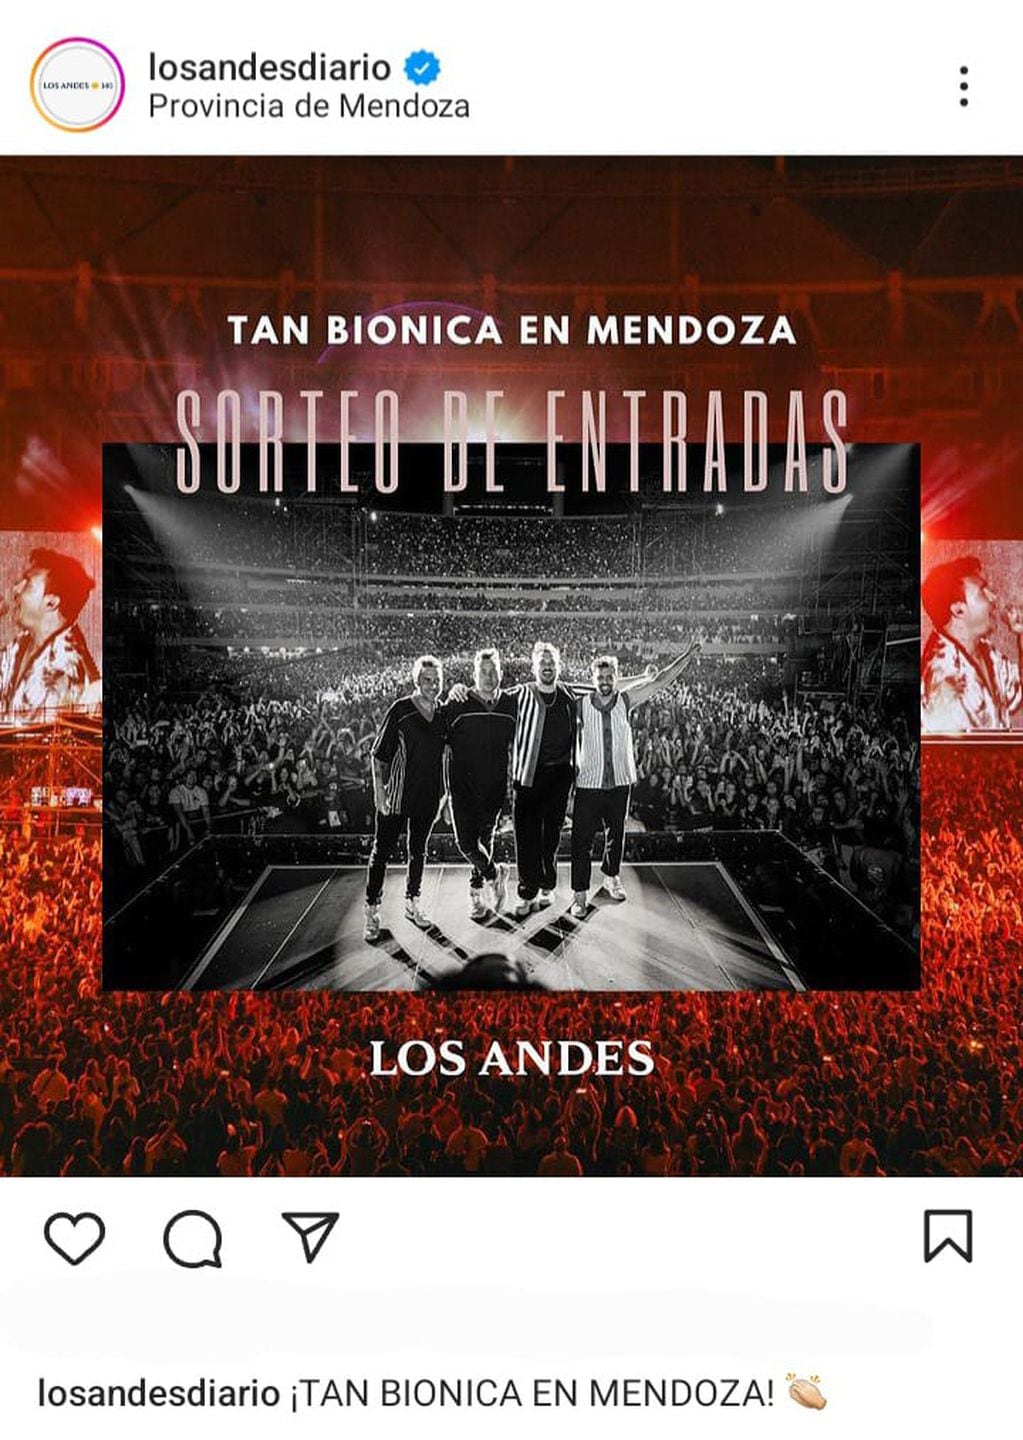 Se sortean 3 pares de entradas en el instagram de Diario Los Andes.